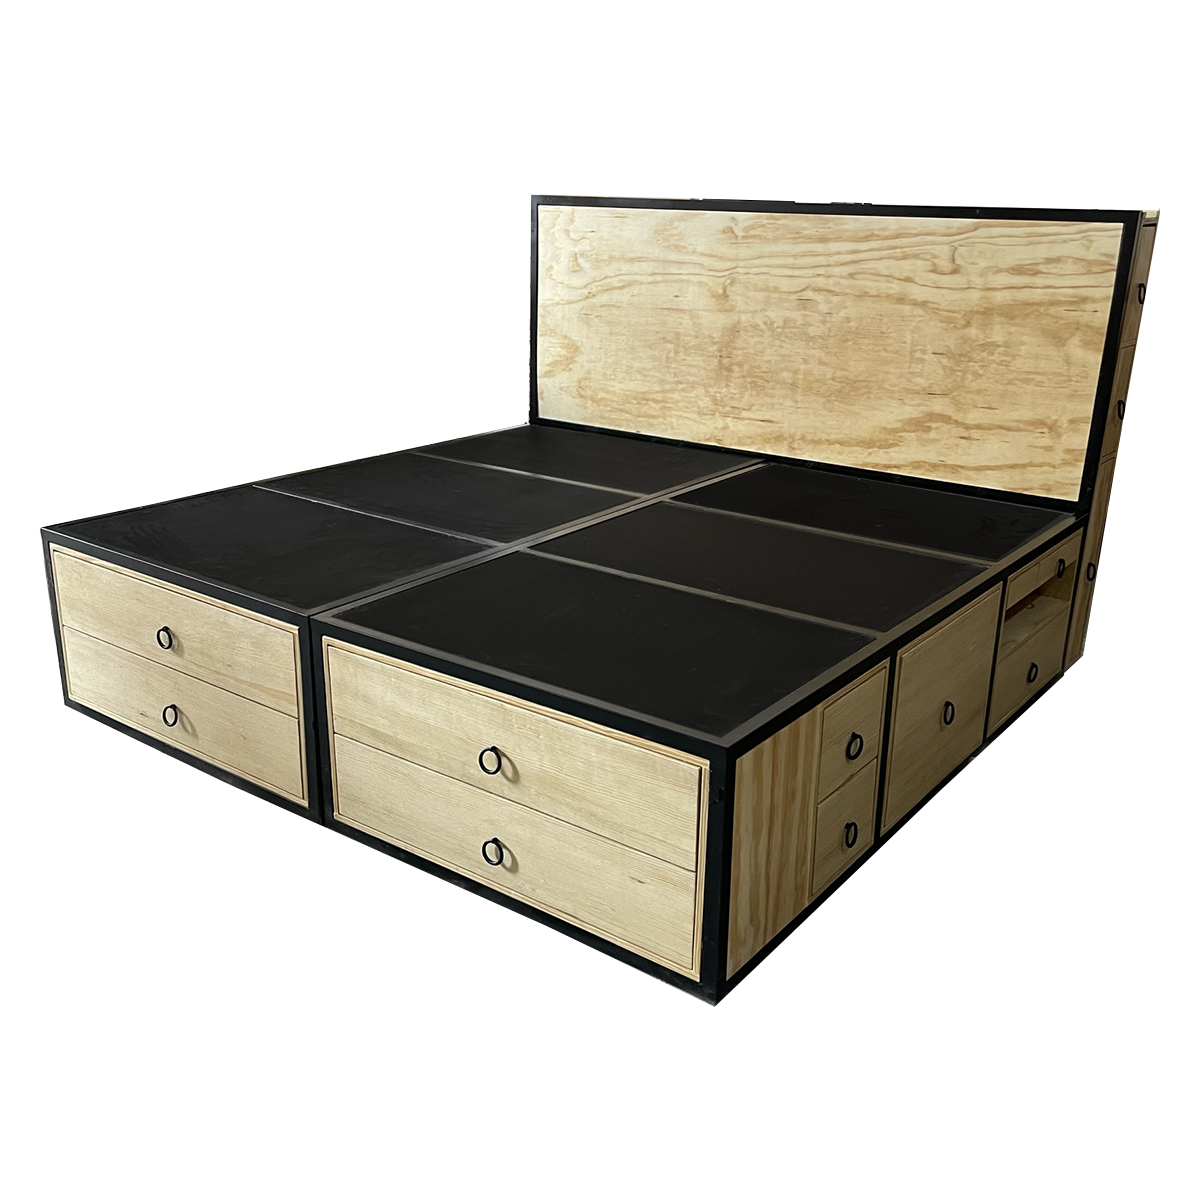 Recámara Oslo Industrial, base de cama con cabecera y burós integrados en un tono negro y acabados en natural.